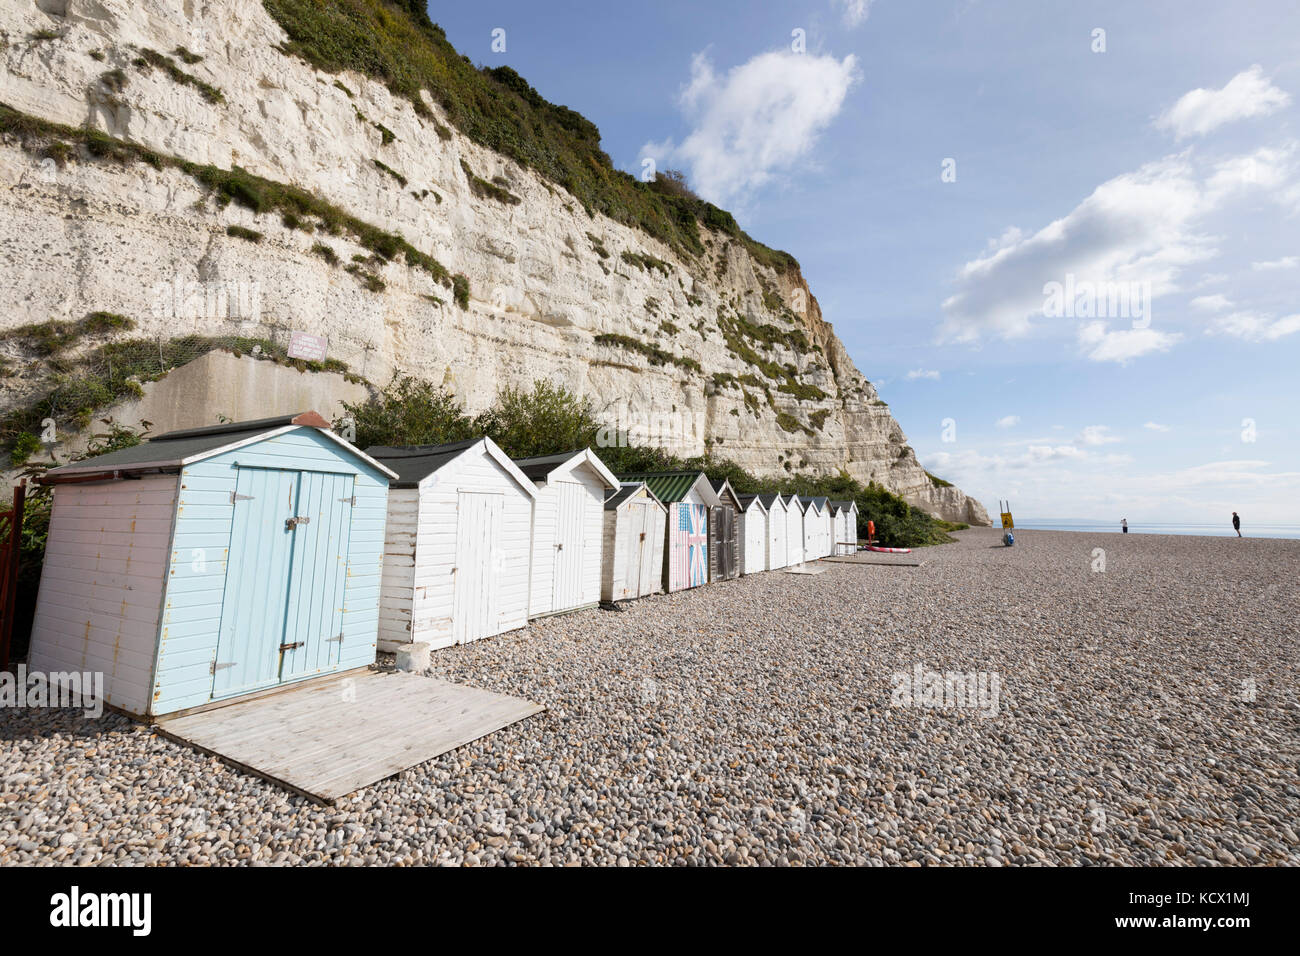 Cabanes de plage sur la plage de galets en dessous de la falaise blanche, Beer, Devon, Angleterre, Royaume-Uni, Europe Banque D'Images